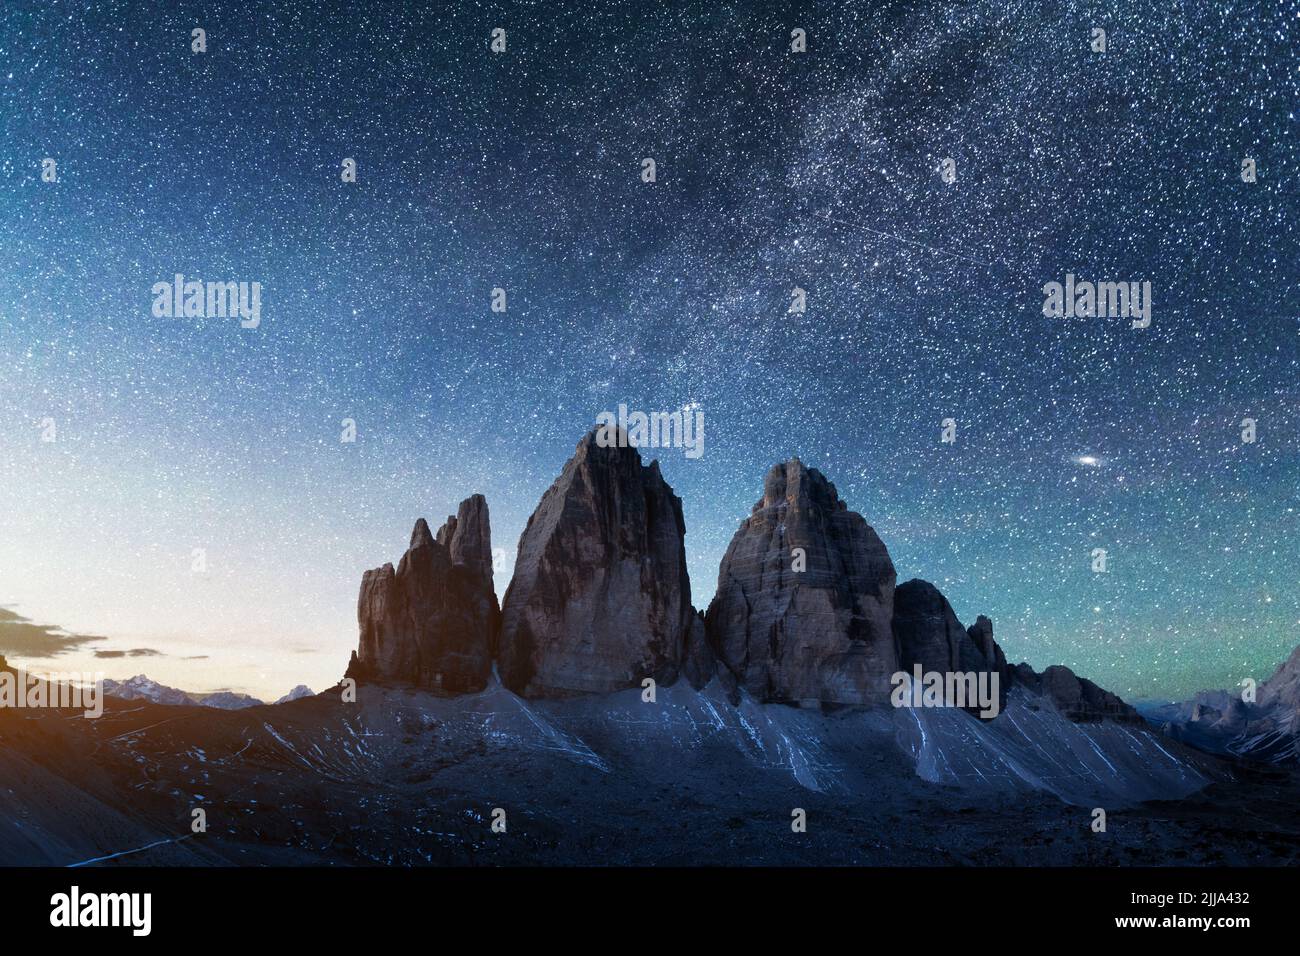 Grünes Zelt von innen beleuchtet vor dem Hintergrund des unglaublichen Sternenhimmels und der drei Gipfel des Lavaredo-Gebirges. Nationalpark Tre Cime di Lavaredo, Dolomiten, Italien. Landschaftsfotografie Stockfoto